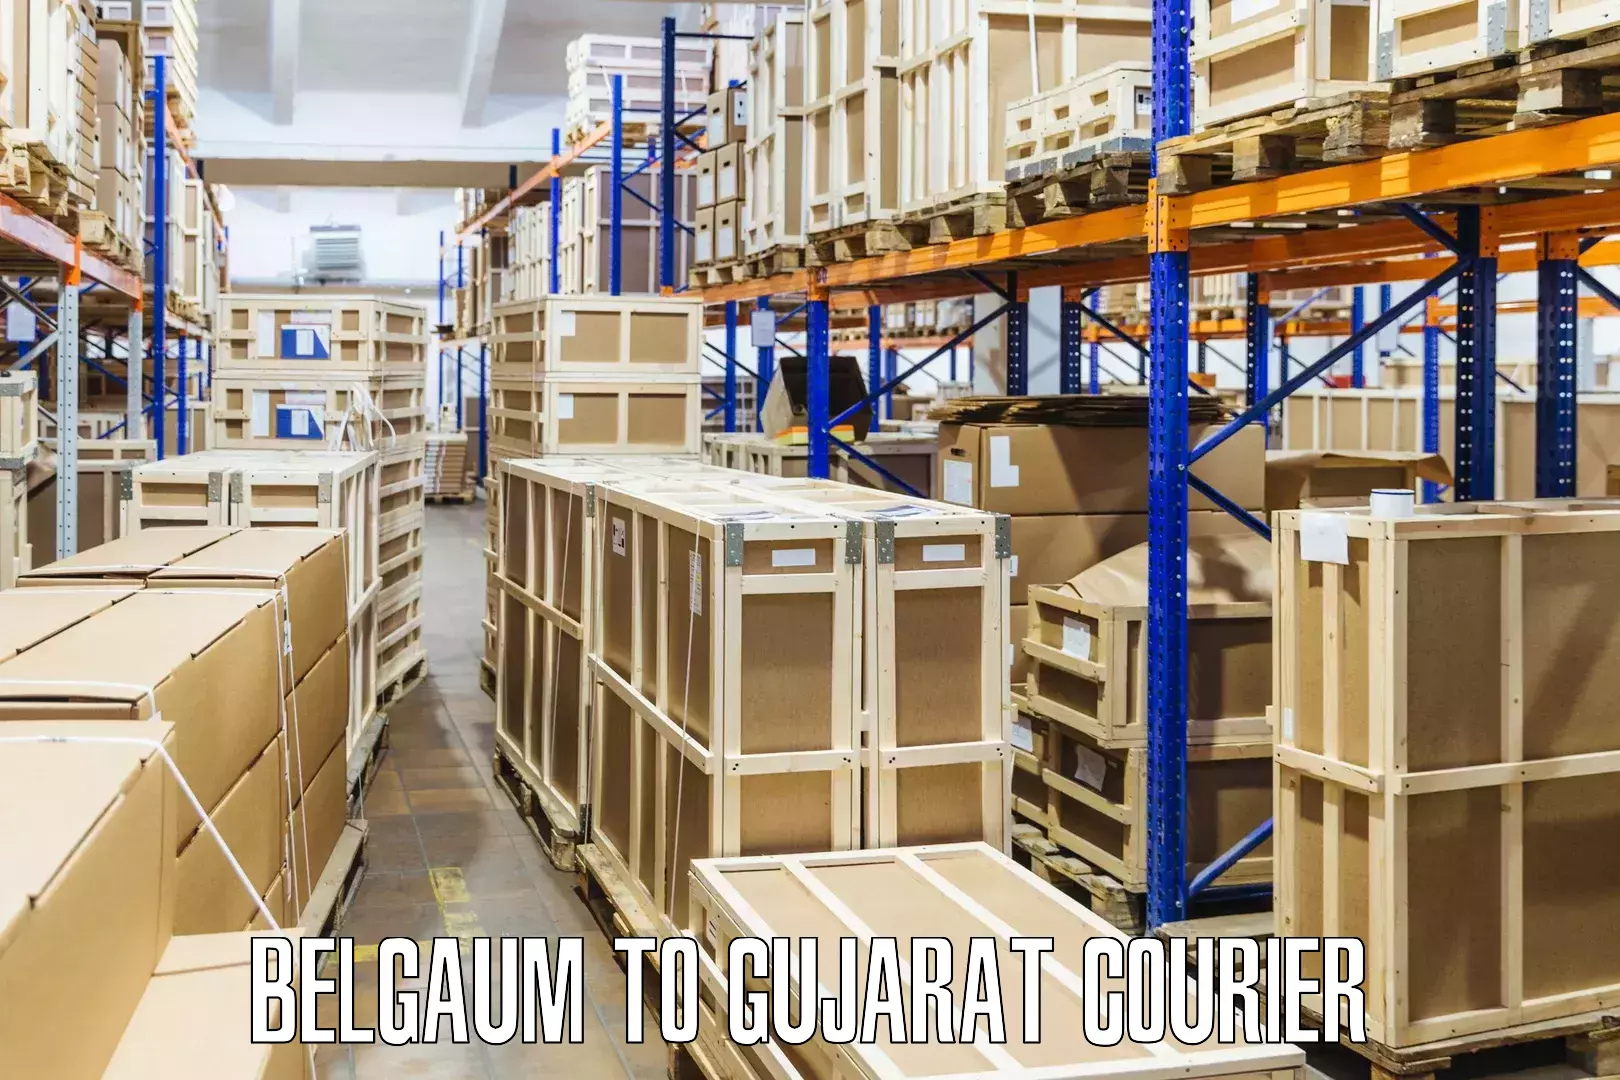 Premium courier services Belgaum to Mandvi